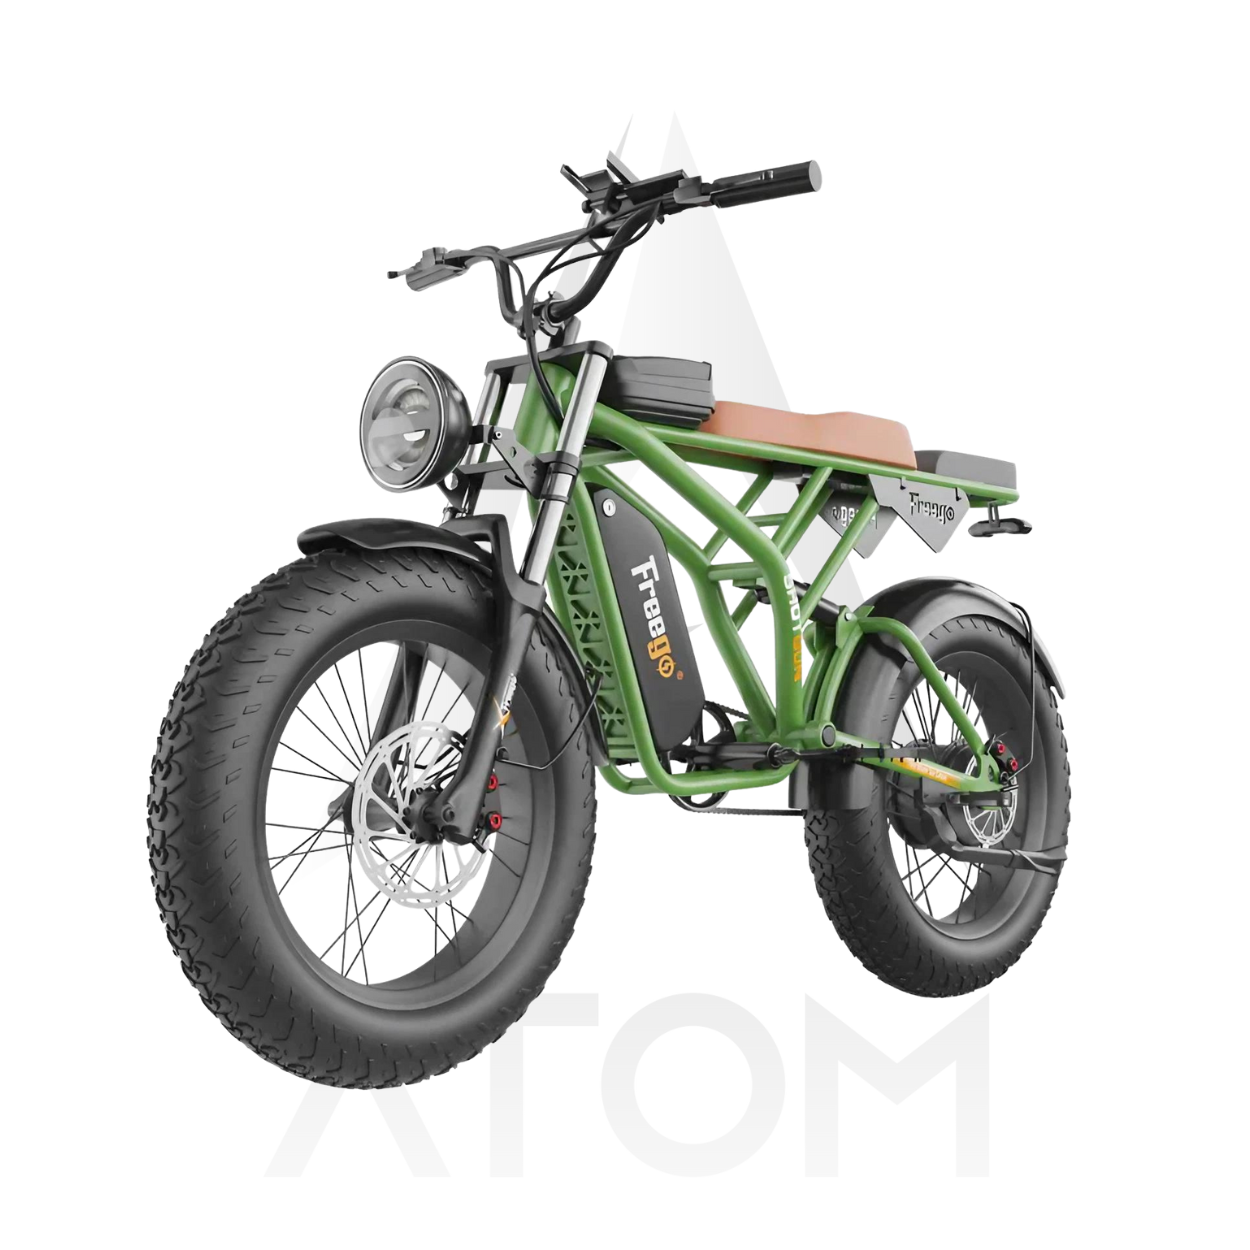 Vélo électrique Fatbike | FREEGO F2 PRO | 1400 W | V-max 25 km/h | Autonomie 80 km - Atom Motors